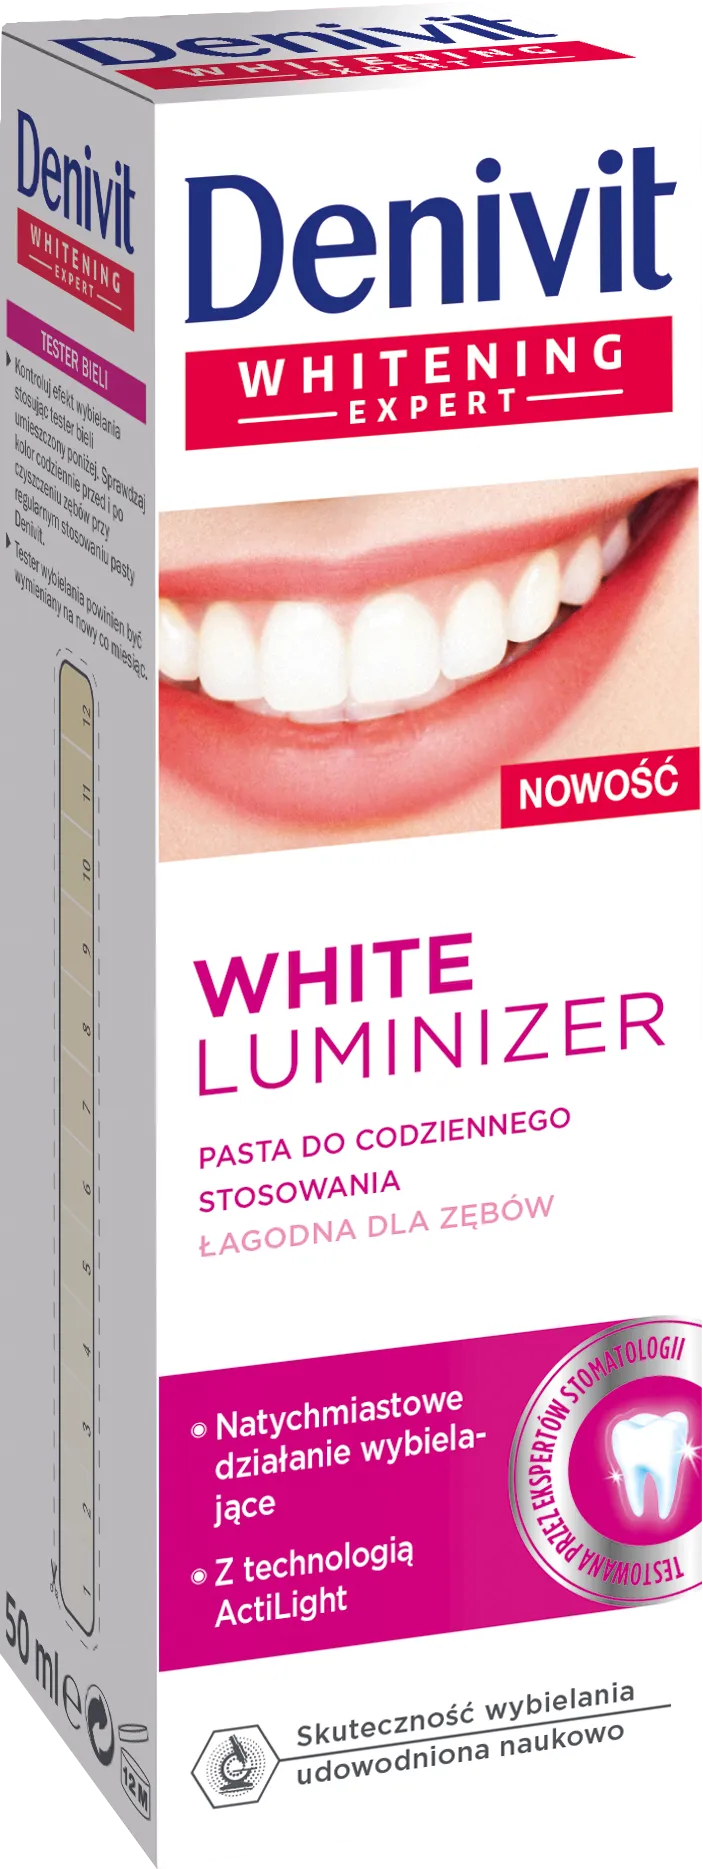 Denivit Whitening Expert White Luminizer Pasta do codziennego stosowania, 50 ml